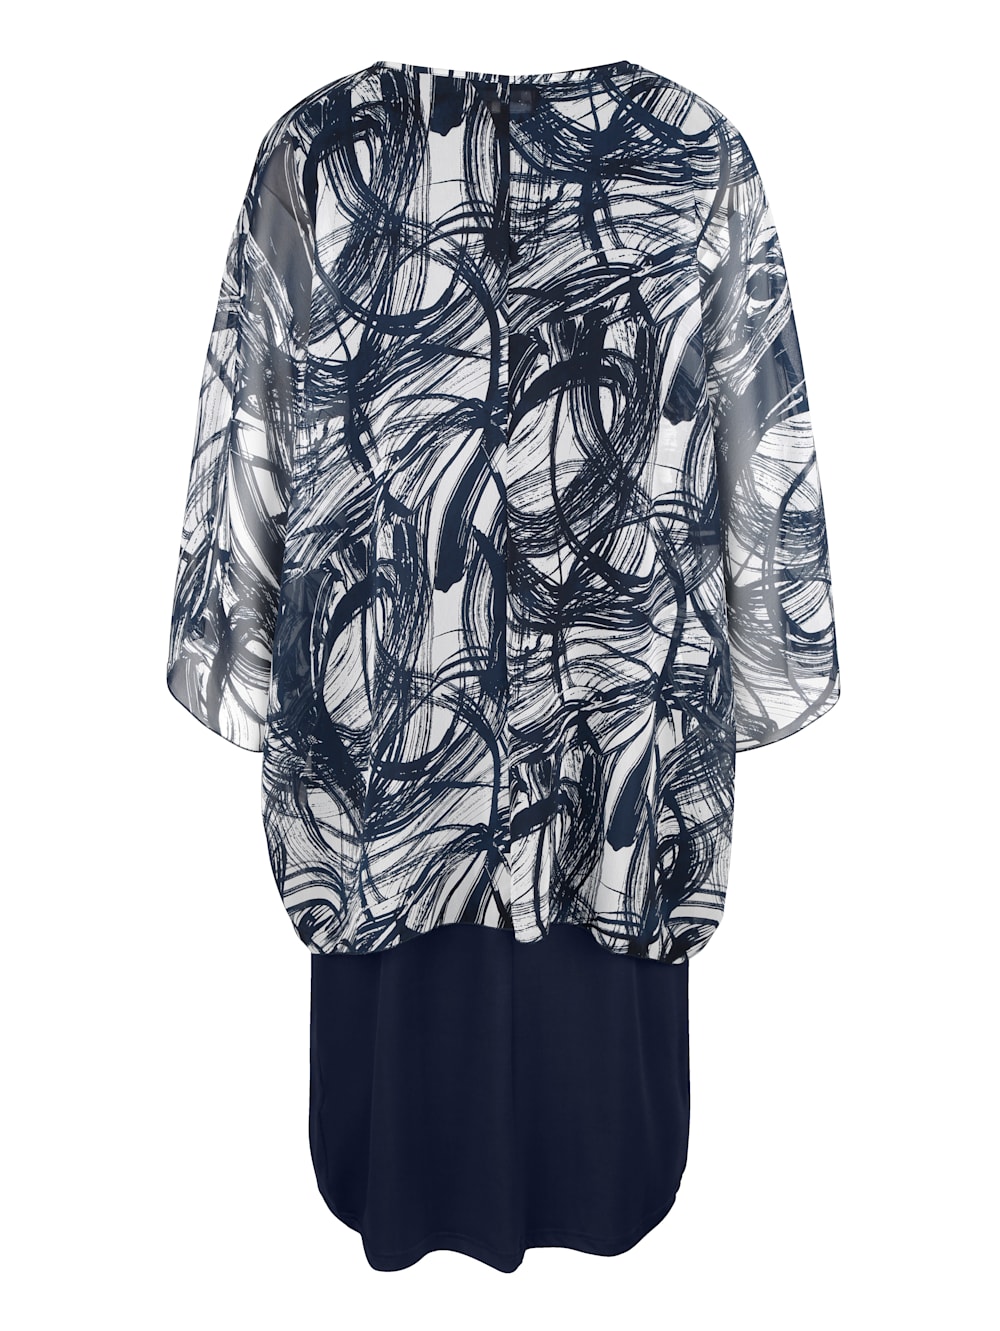 M Collection Set Kleid Mit Chiffonuberwurf In Figurschmeichelnder Form Klingel